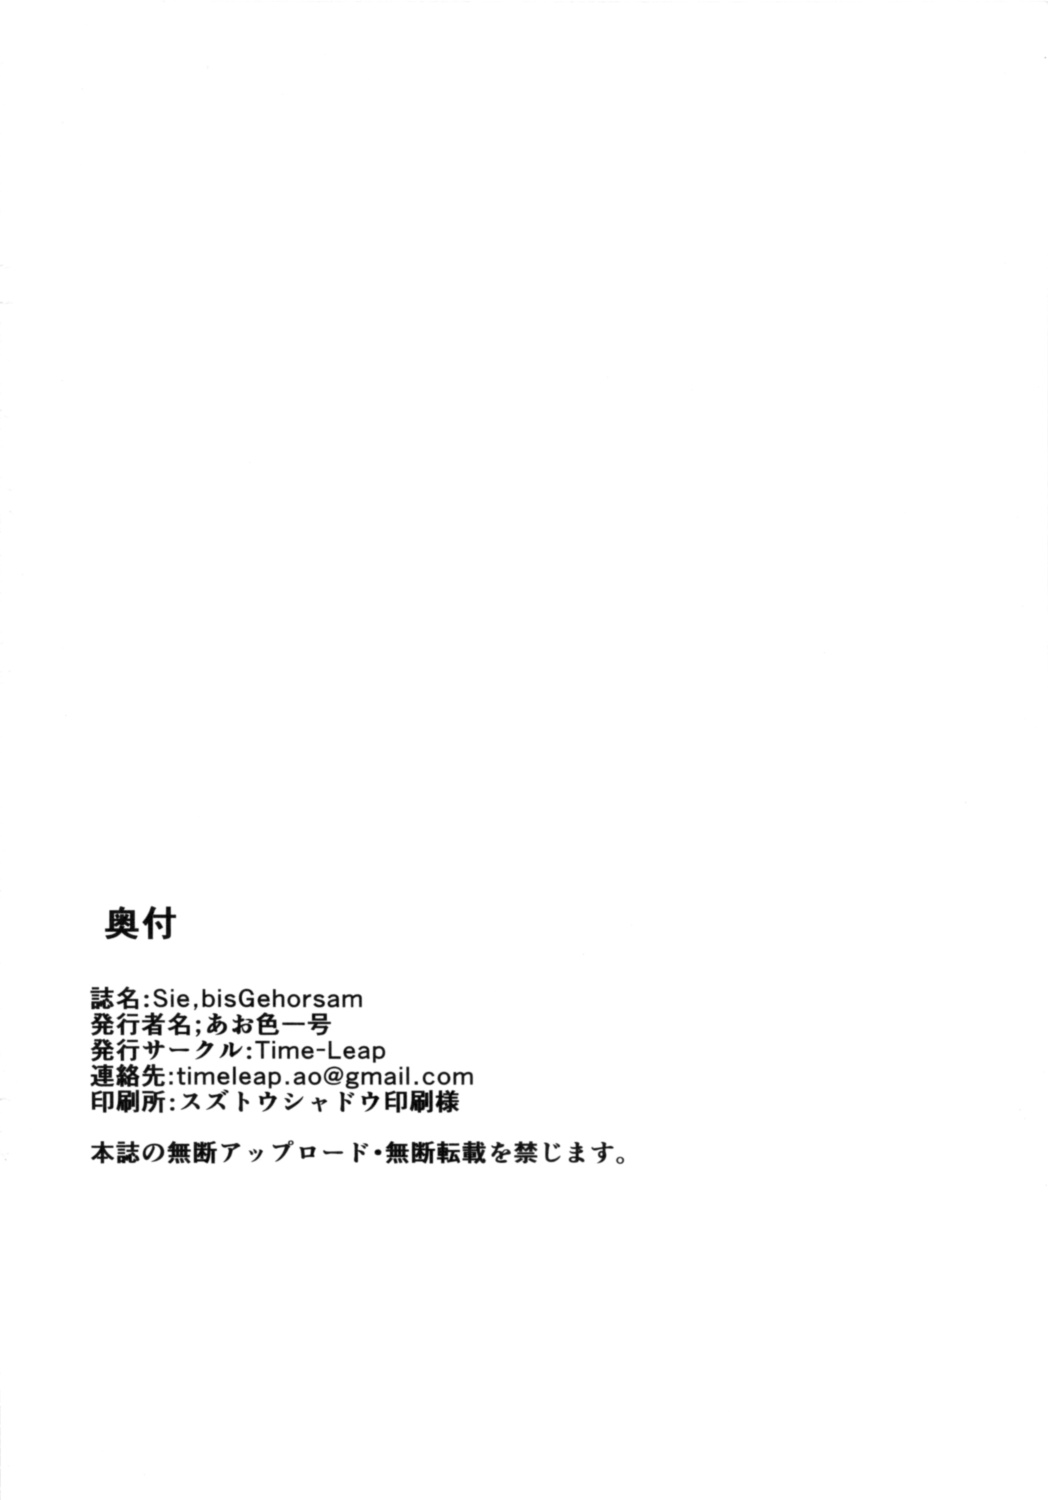 (COMIC1☆8) [Time-Leap (あお色一号)] Sie,bisGehorsam (艦隊これくしょん -艦これ-)